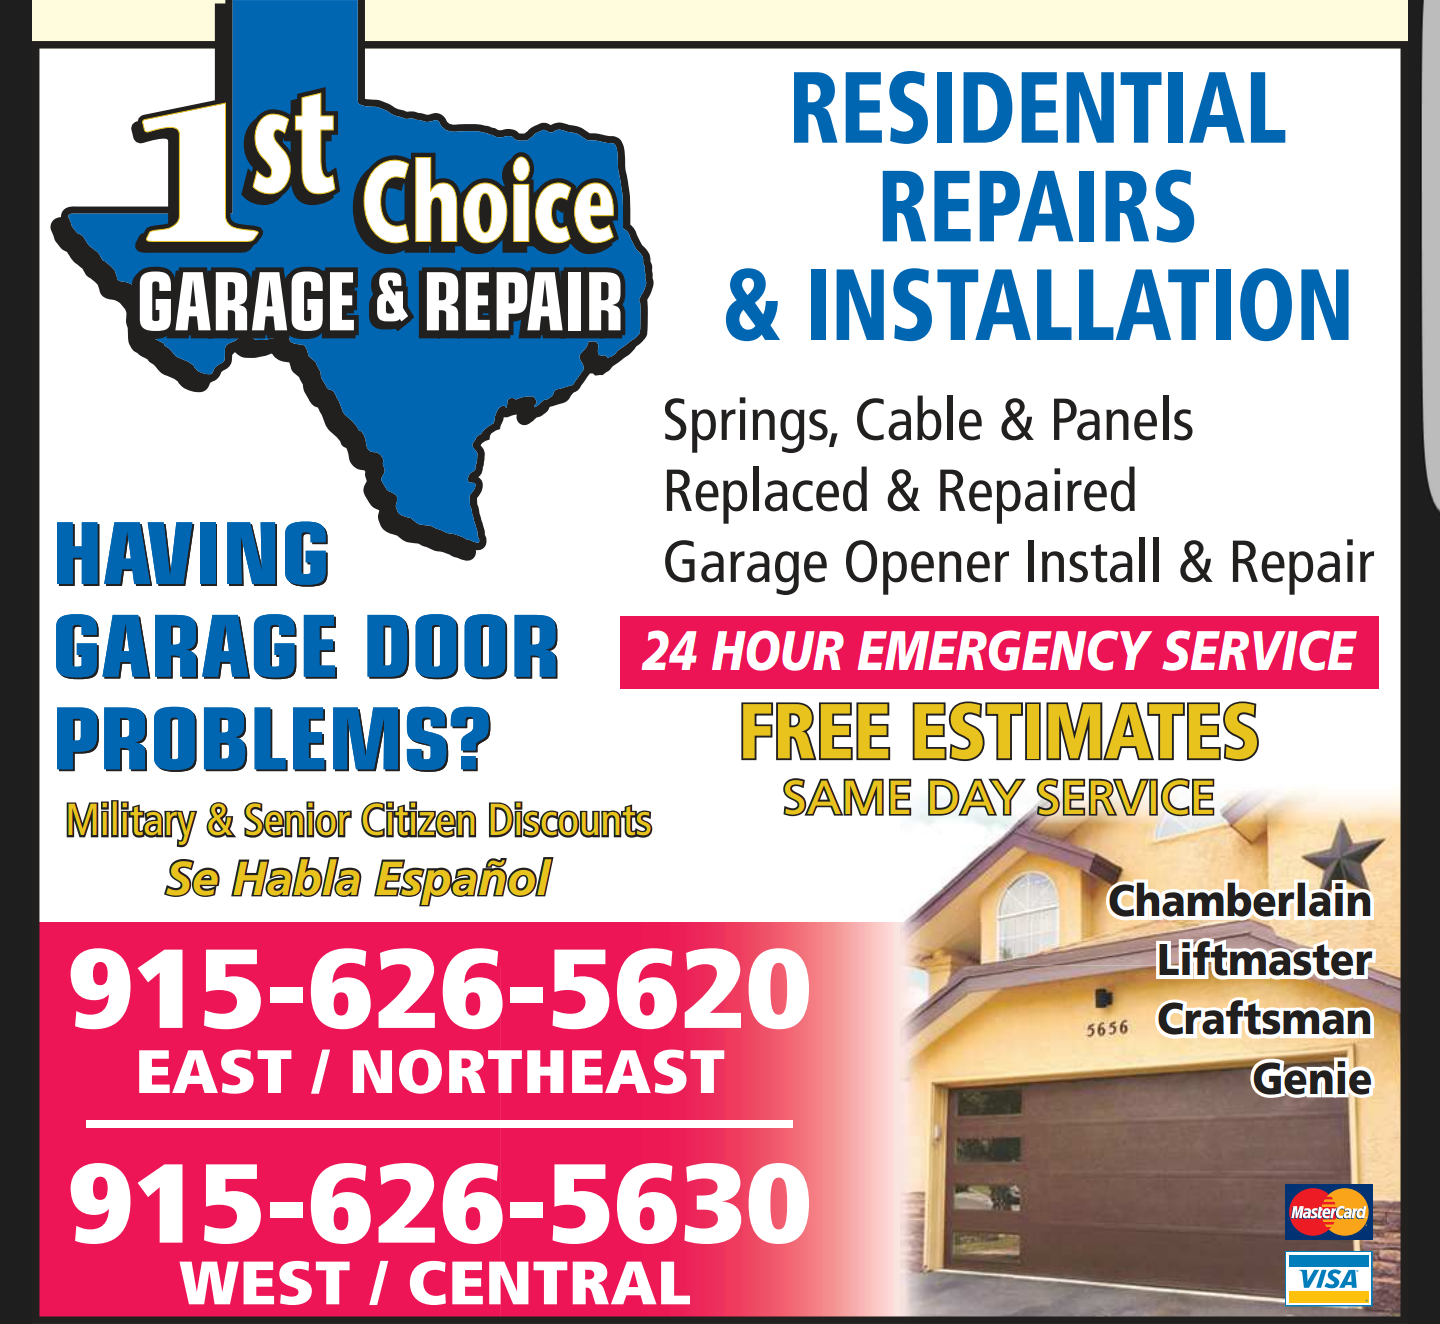 First Choice Garage & Repair Logo